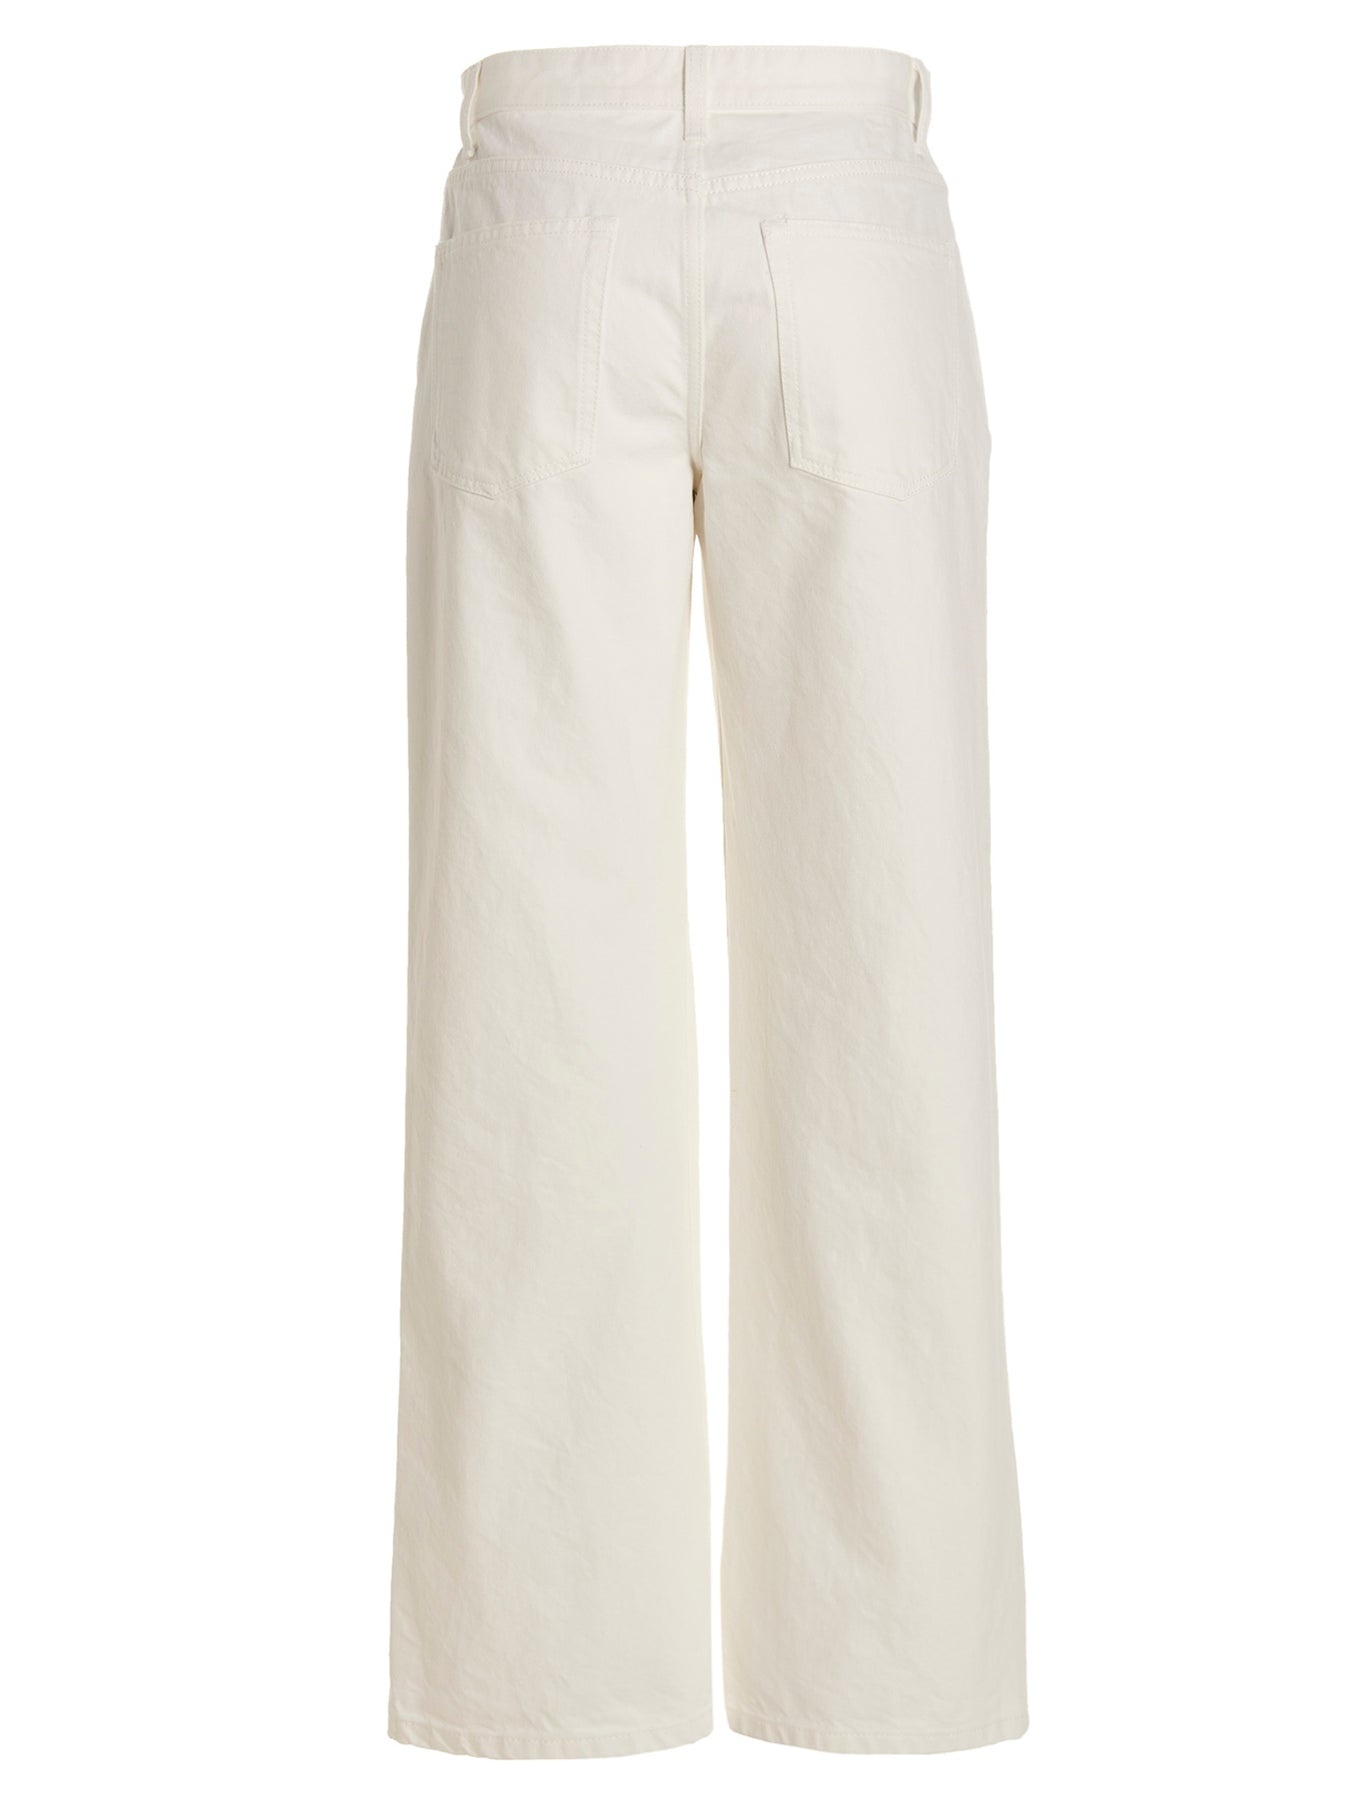 Eglitta Jeans White - 2